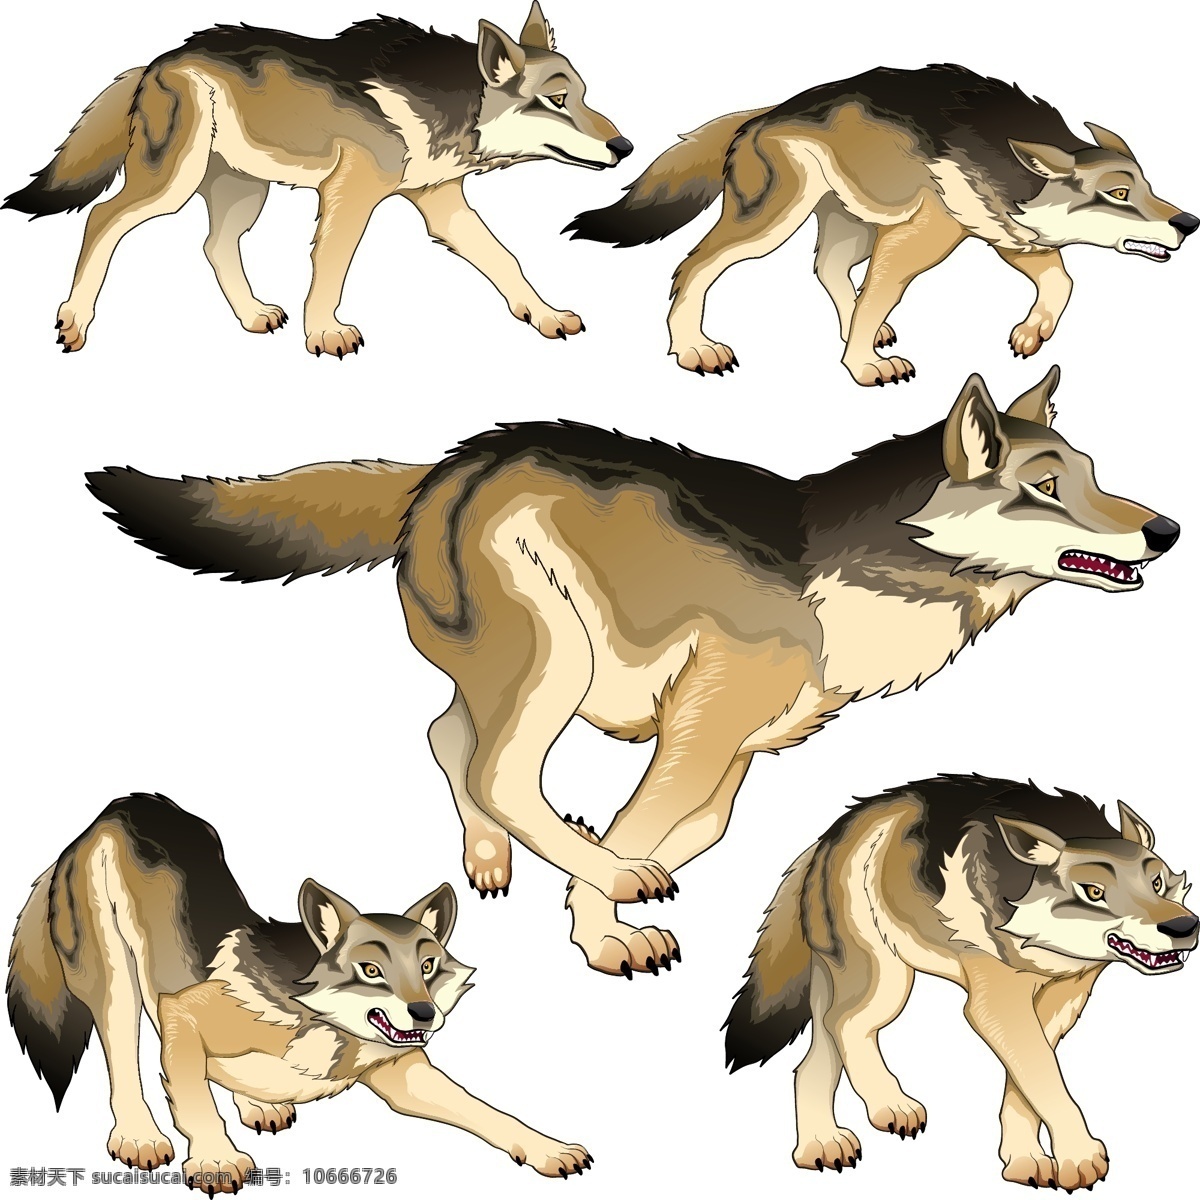 狗 野生动物 野狼 动物 卡通动物 设计素材 手绘动物 野狗 儿童插画 背景图片 生物世界